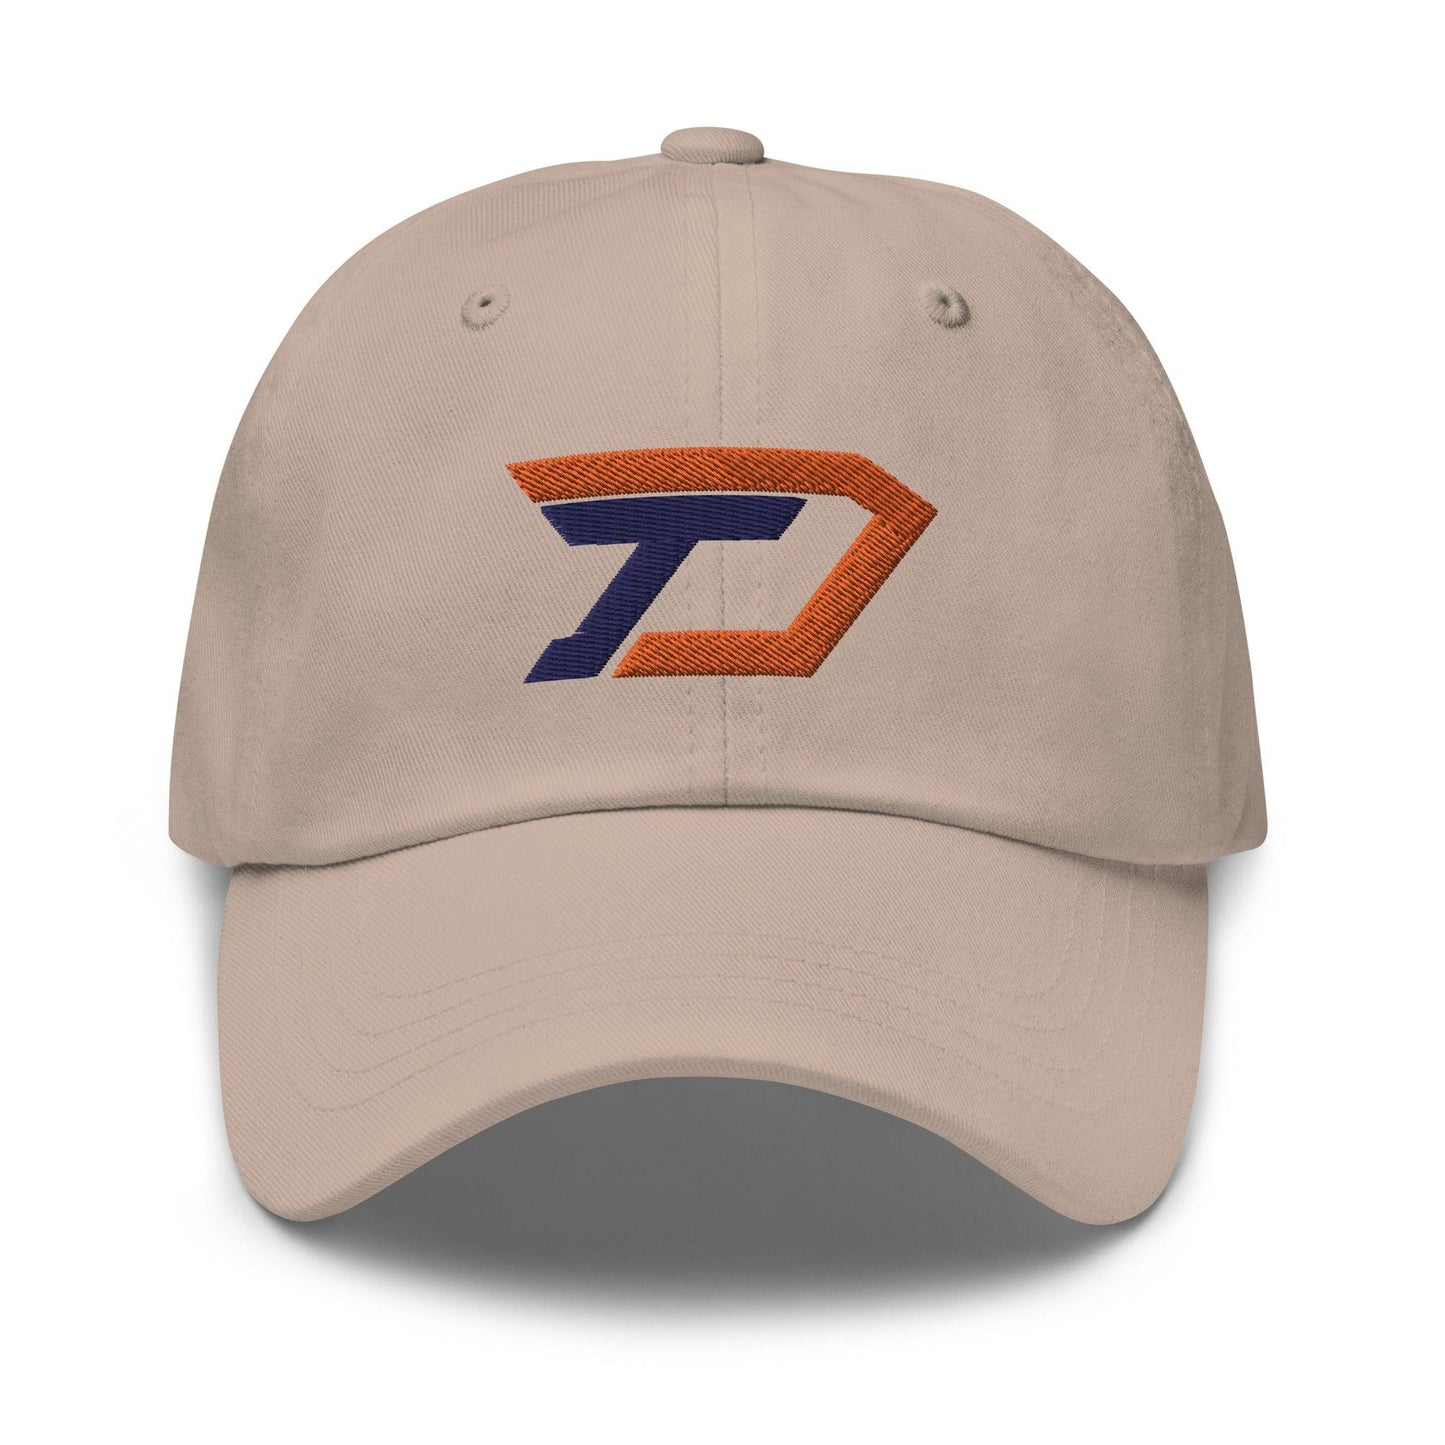 Tommy Dejuneaus “TD” hat - Fan Arch